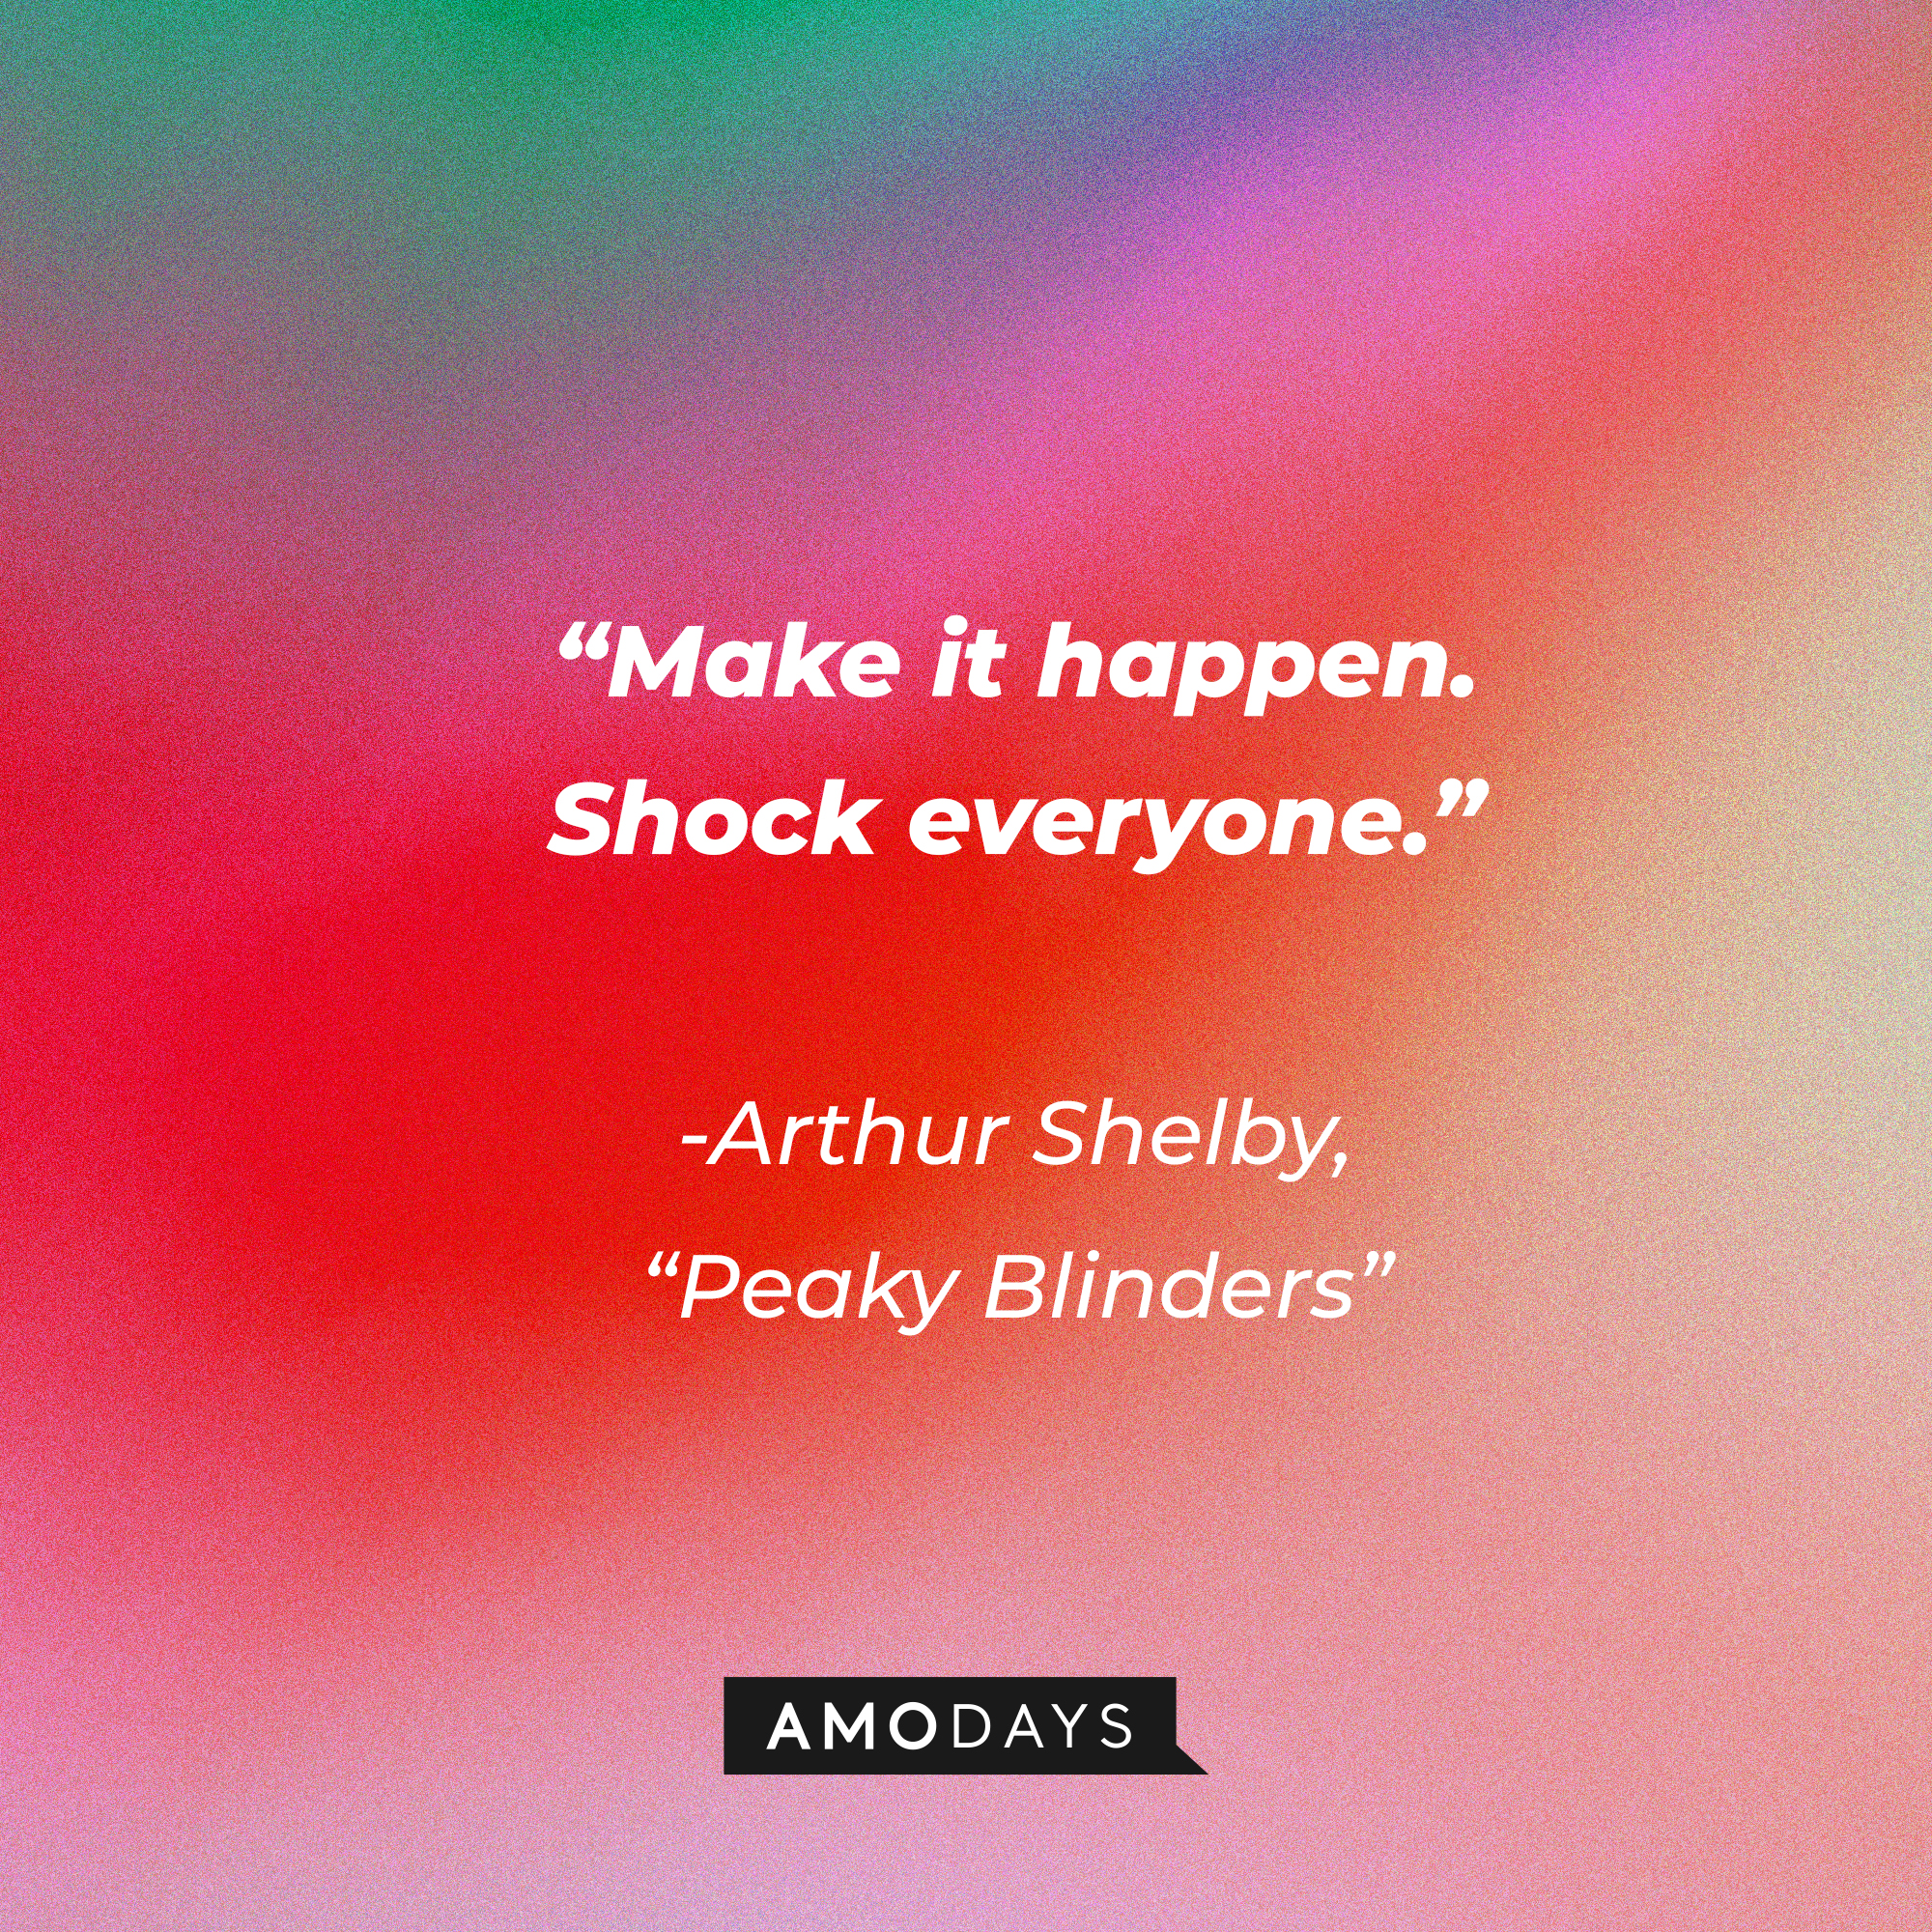 Arthur Shelby's his quote in "Peaky Blinders:" “Make it happen. Shock everyone.” | Source: Facebook.com/PeakyBlinders